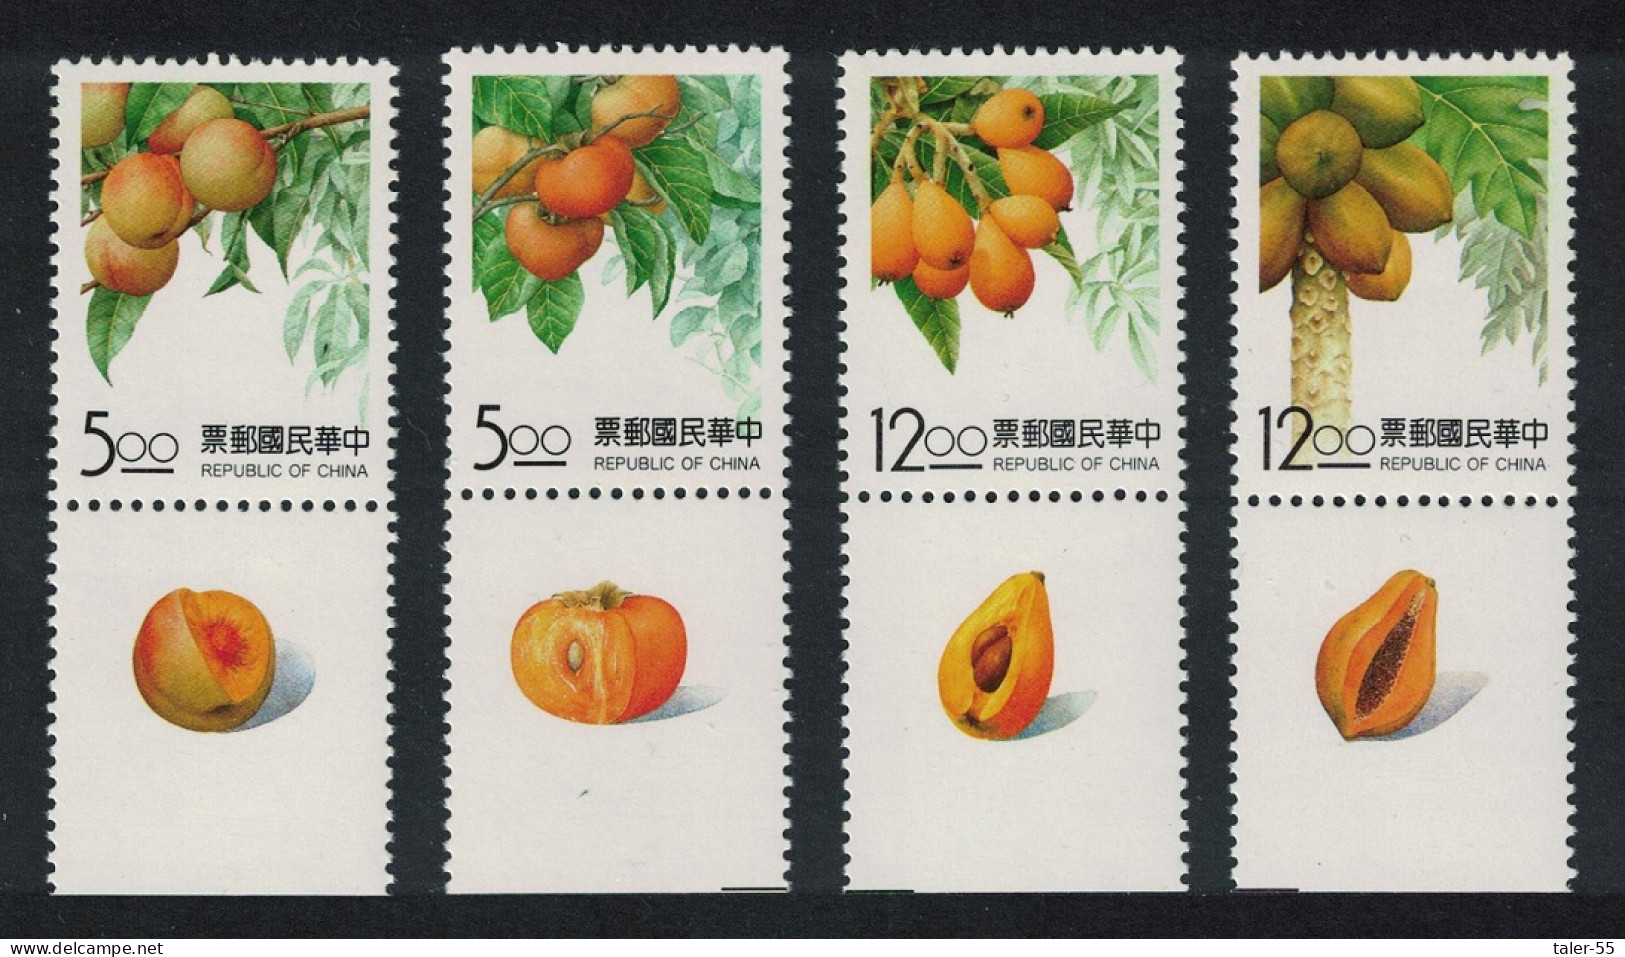 Taiwan Fruits 4v Margins 1993 MNH SG#2147-2150 - Nuevos